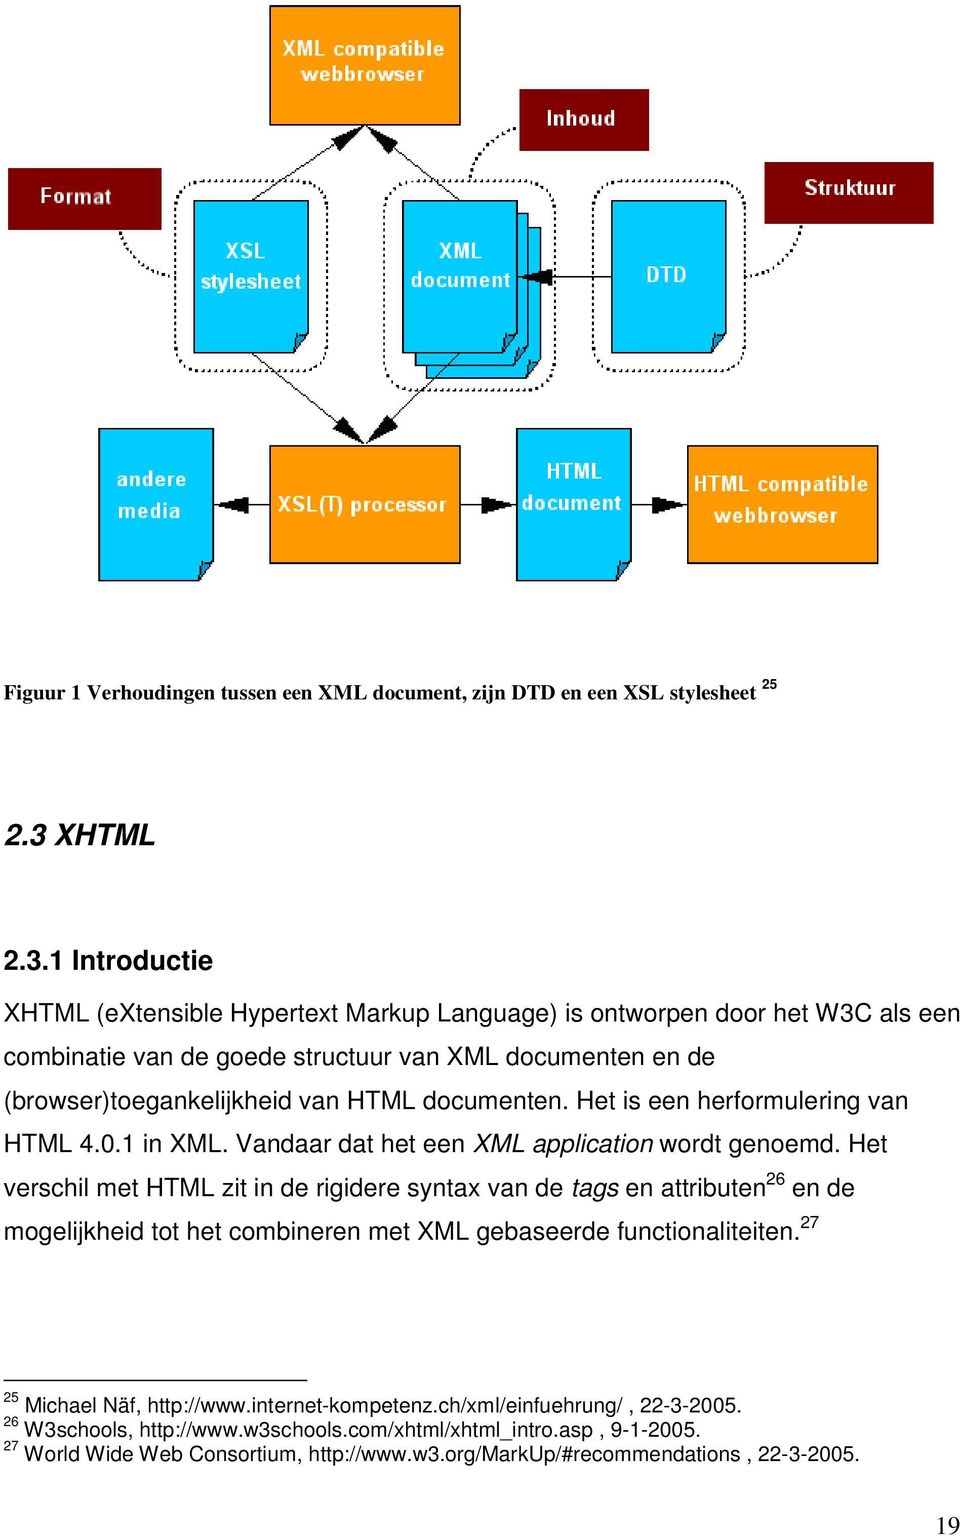 1 Introductie XHTML (extensible Hypertext Markup Language) is ontworpen door het W3C als een combinatie van de goede structuur van XML documenten en de (browser)toegankelijkheid van HTML